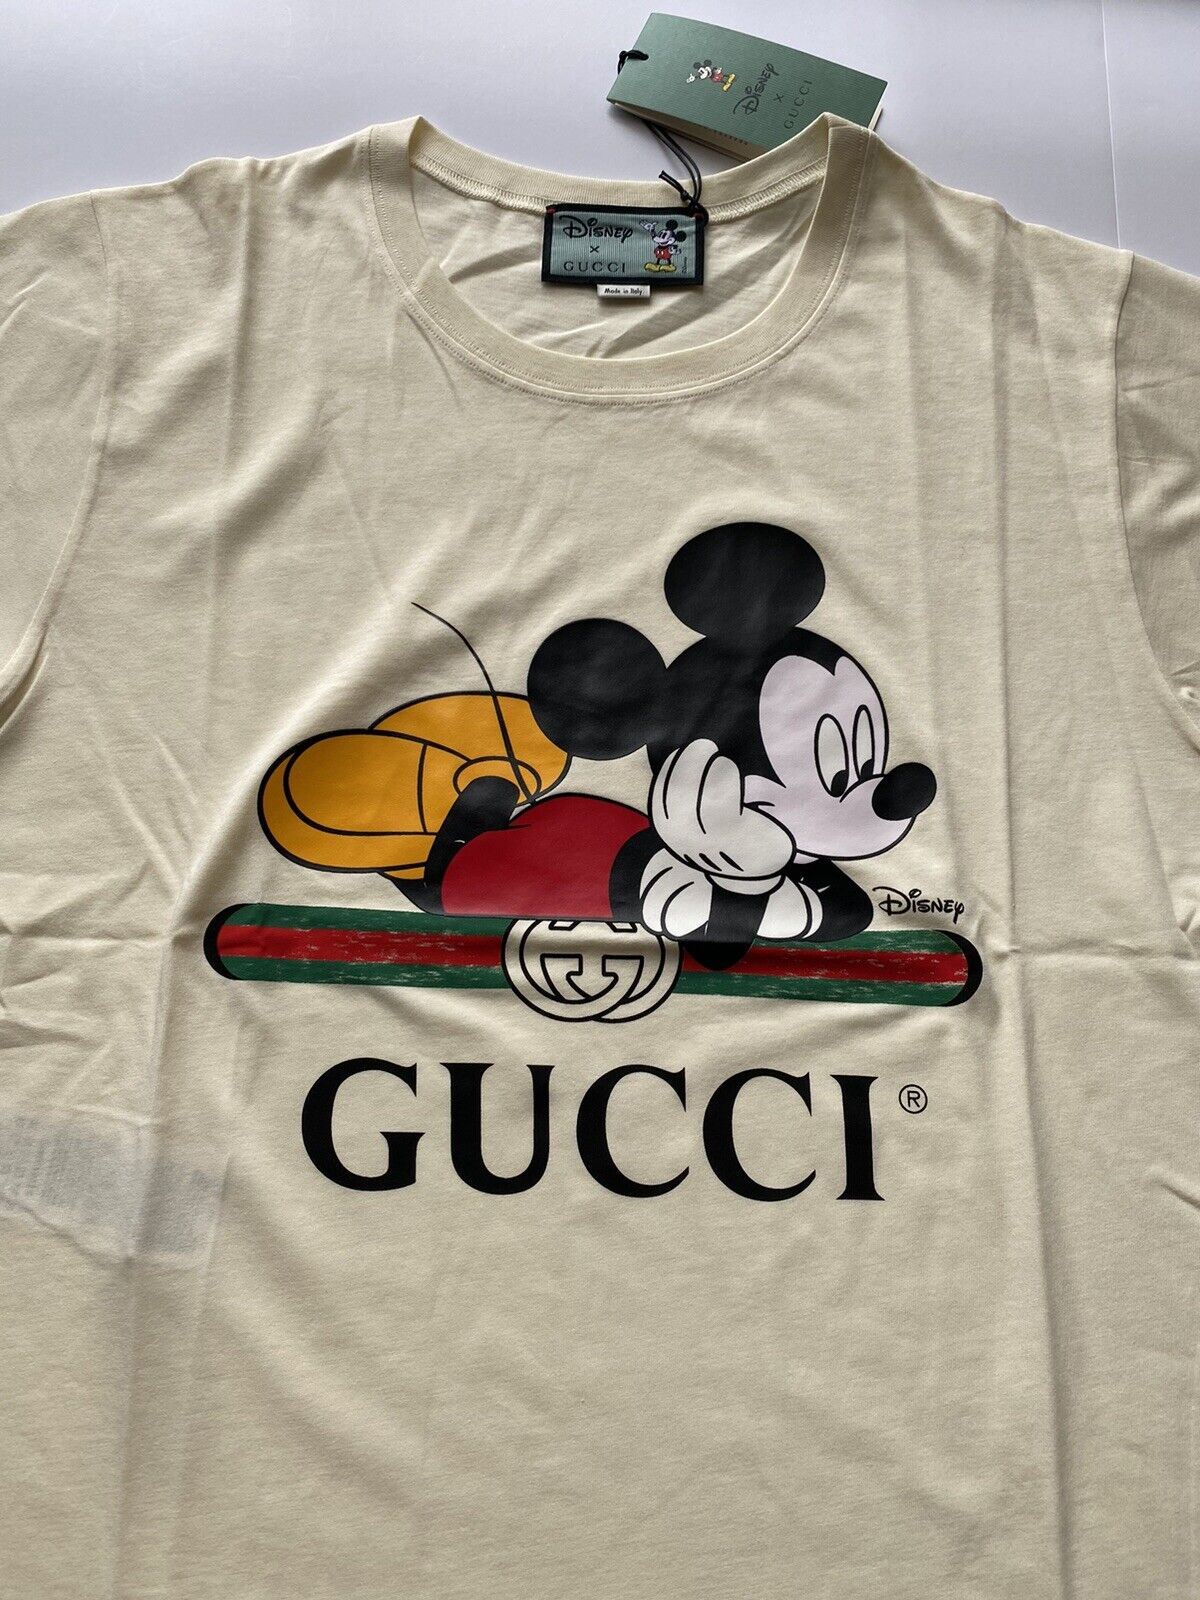 Neu mit Etikett: Gucci Mickey Mouse Tan Baumwolljersey-T-Shirt Small 492347 Italien